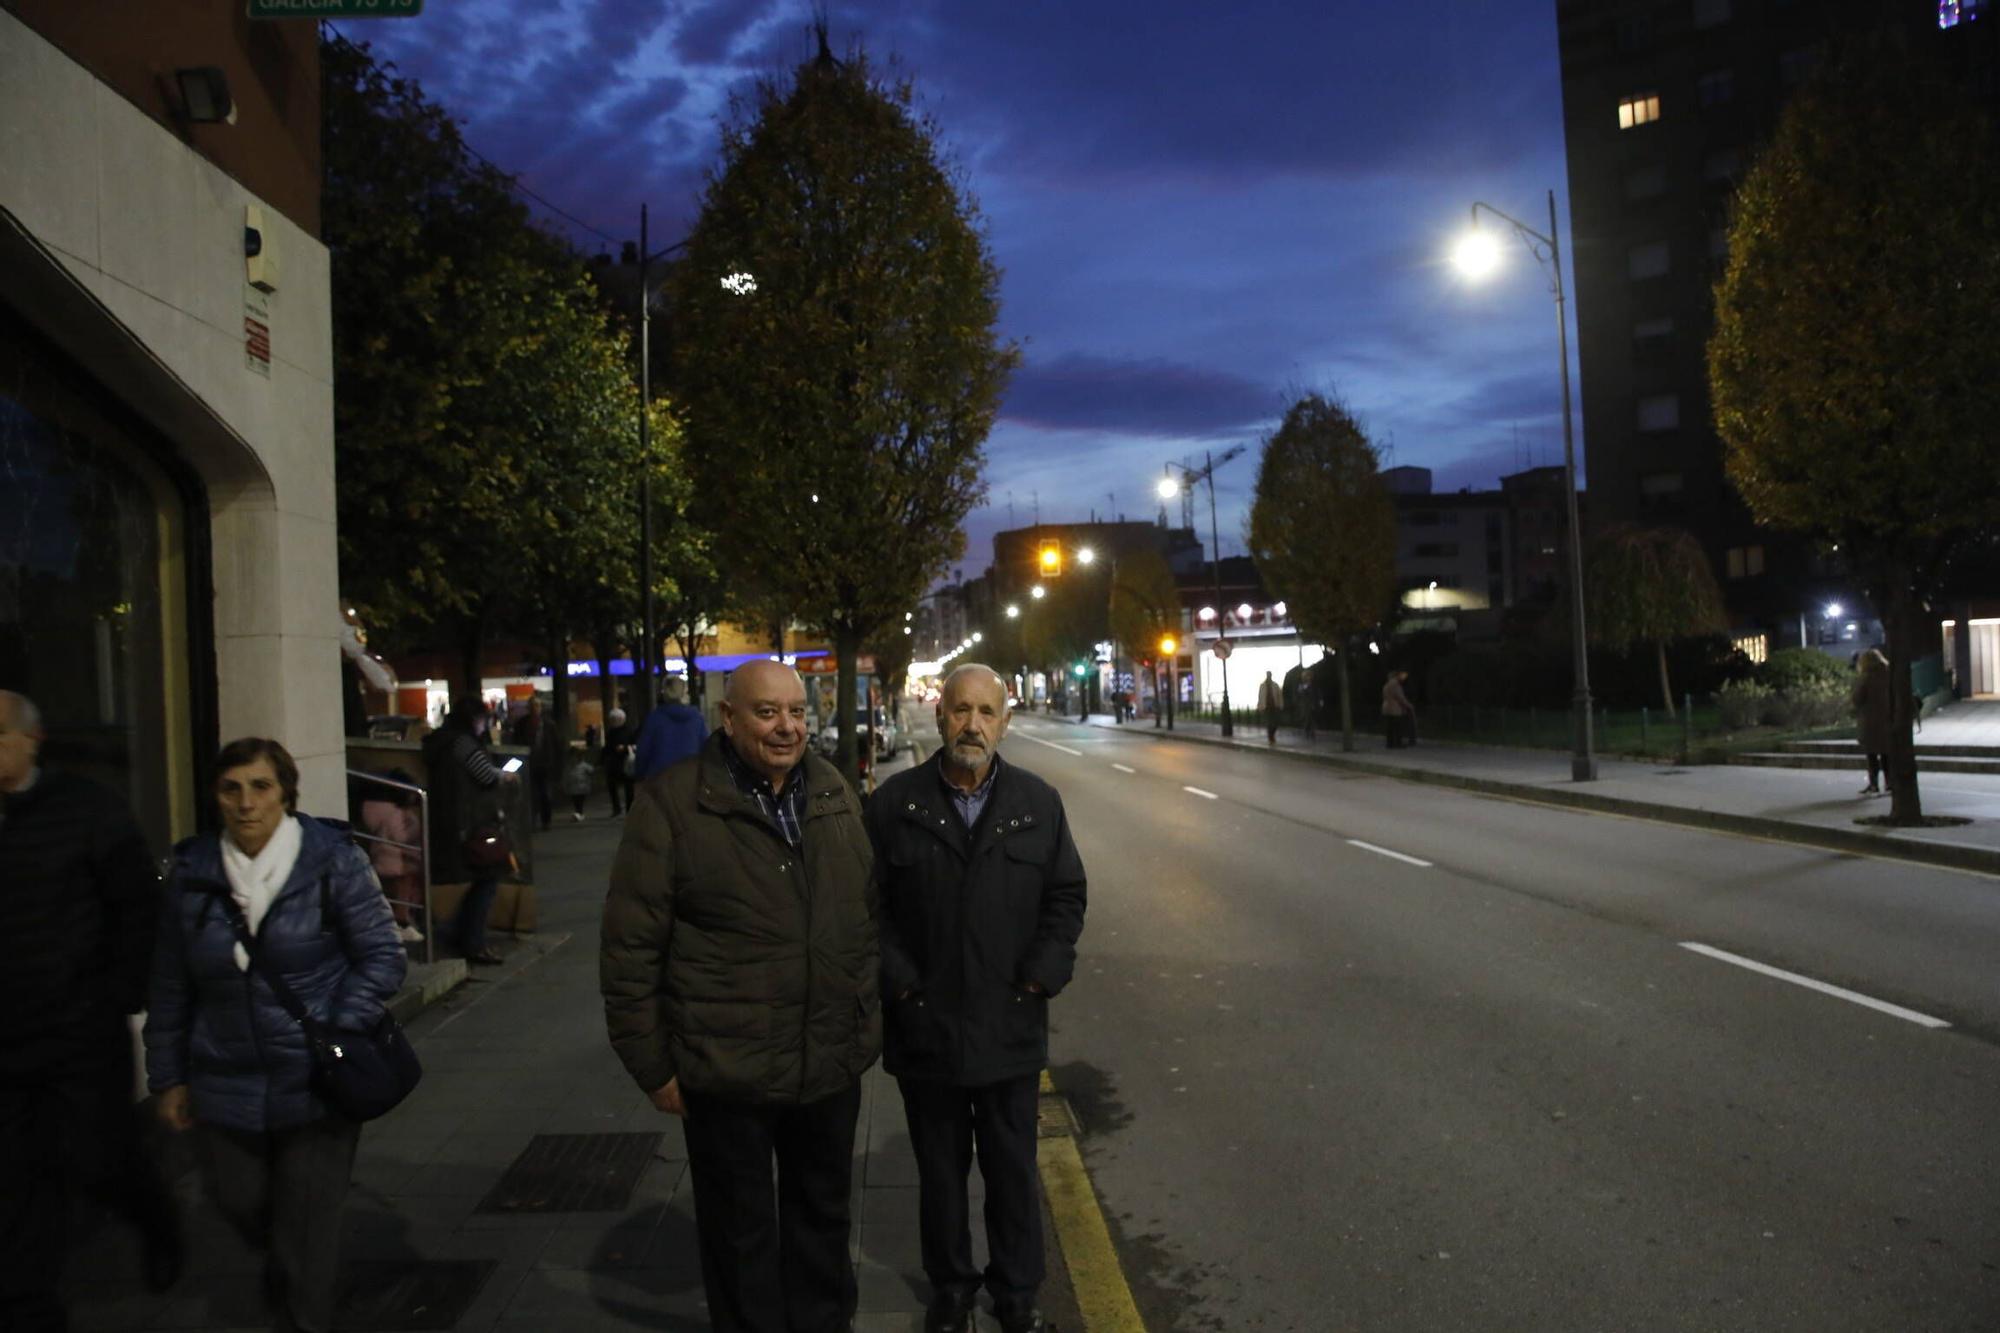 El espíritu navideño de los vecinos ilumina los barrios de Gijón (en imágenes)